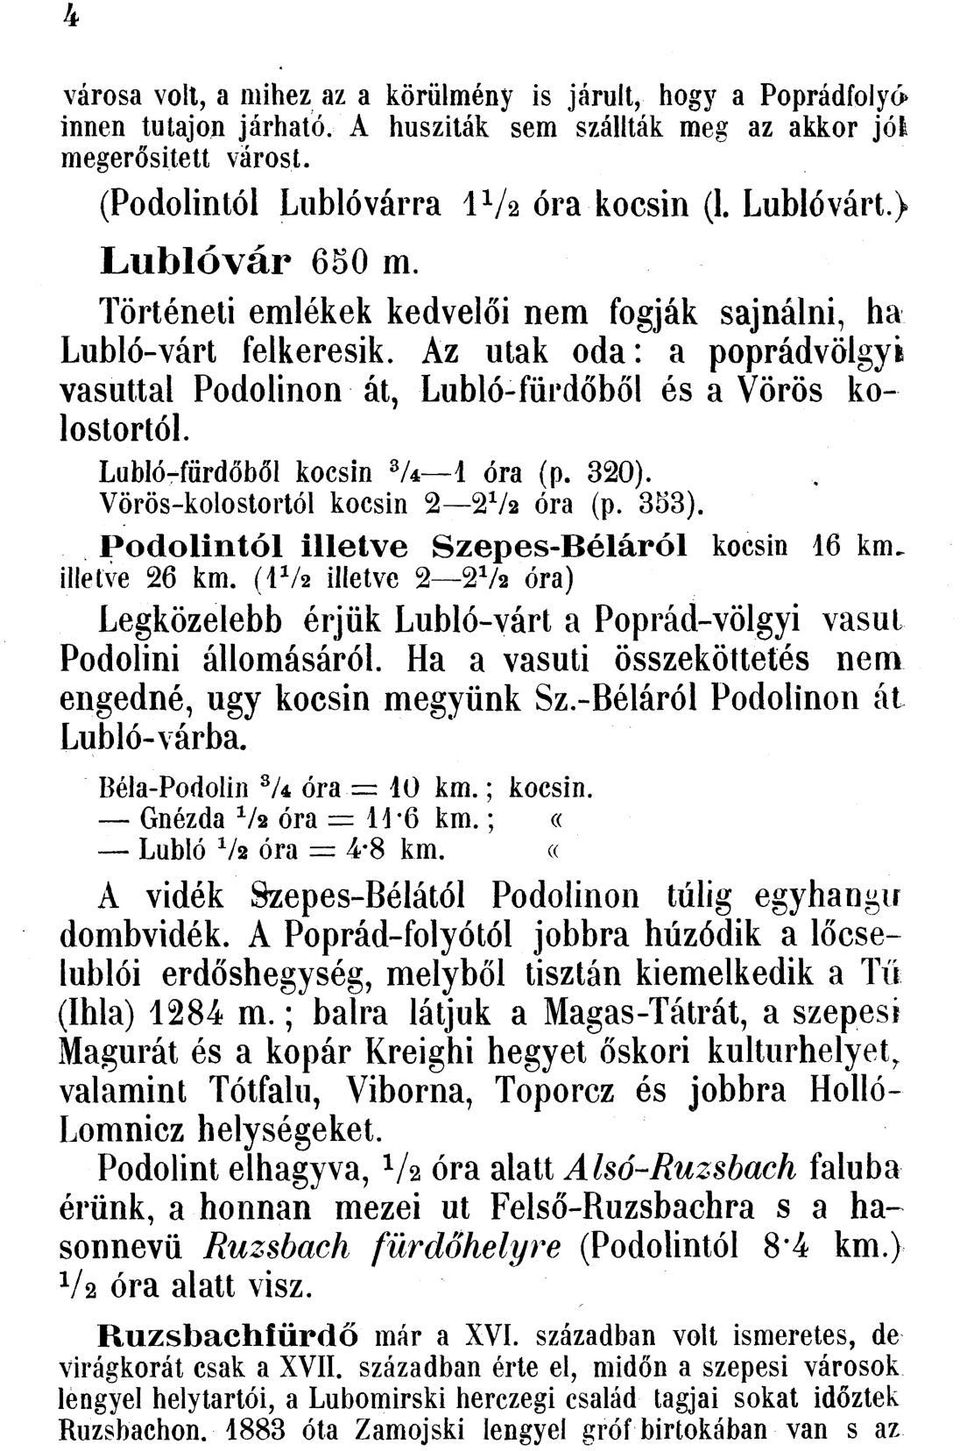 Lubló-fürdőbőí kocsin ZU 1 óra (p. 320). Vörös-kolostortól kocsin 2 2 V2 óra (p. 333). P o d o lin tó l illetv e S zep es-b éláról kocsin 16 km. illetve 26 km.